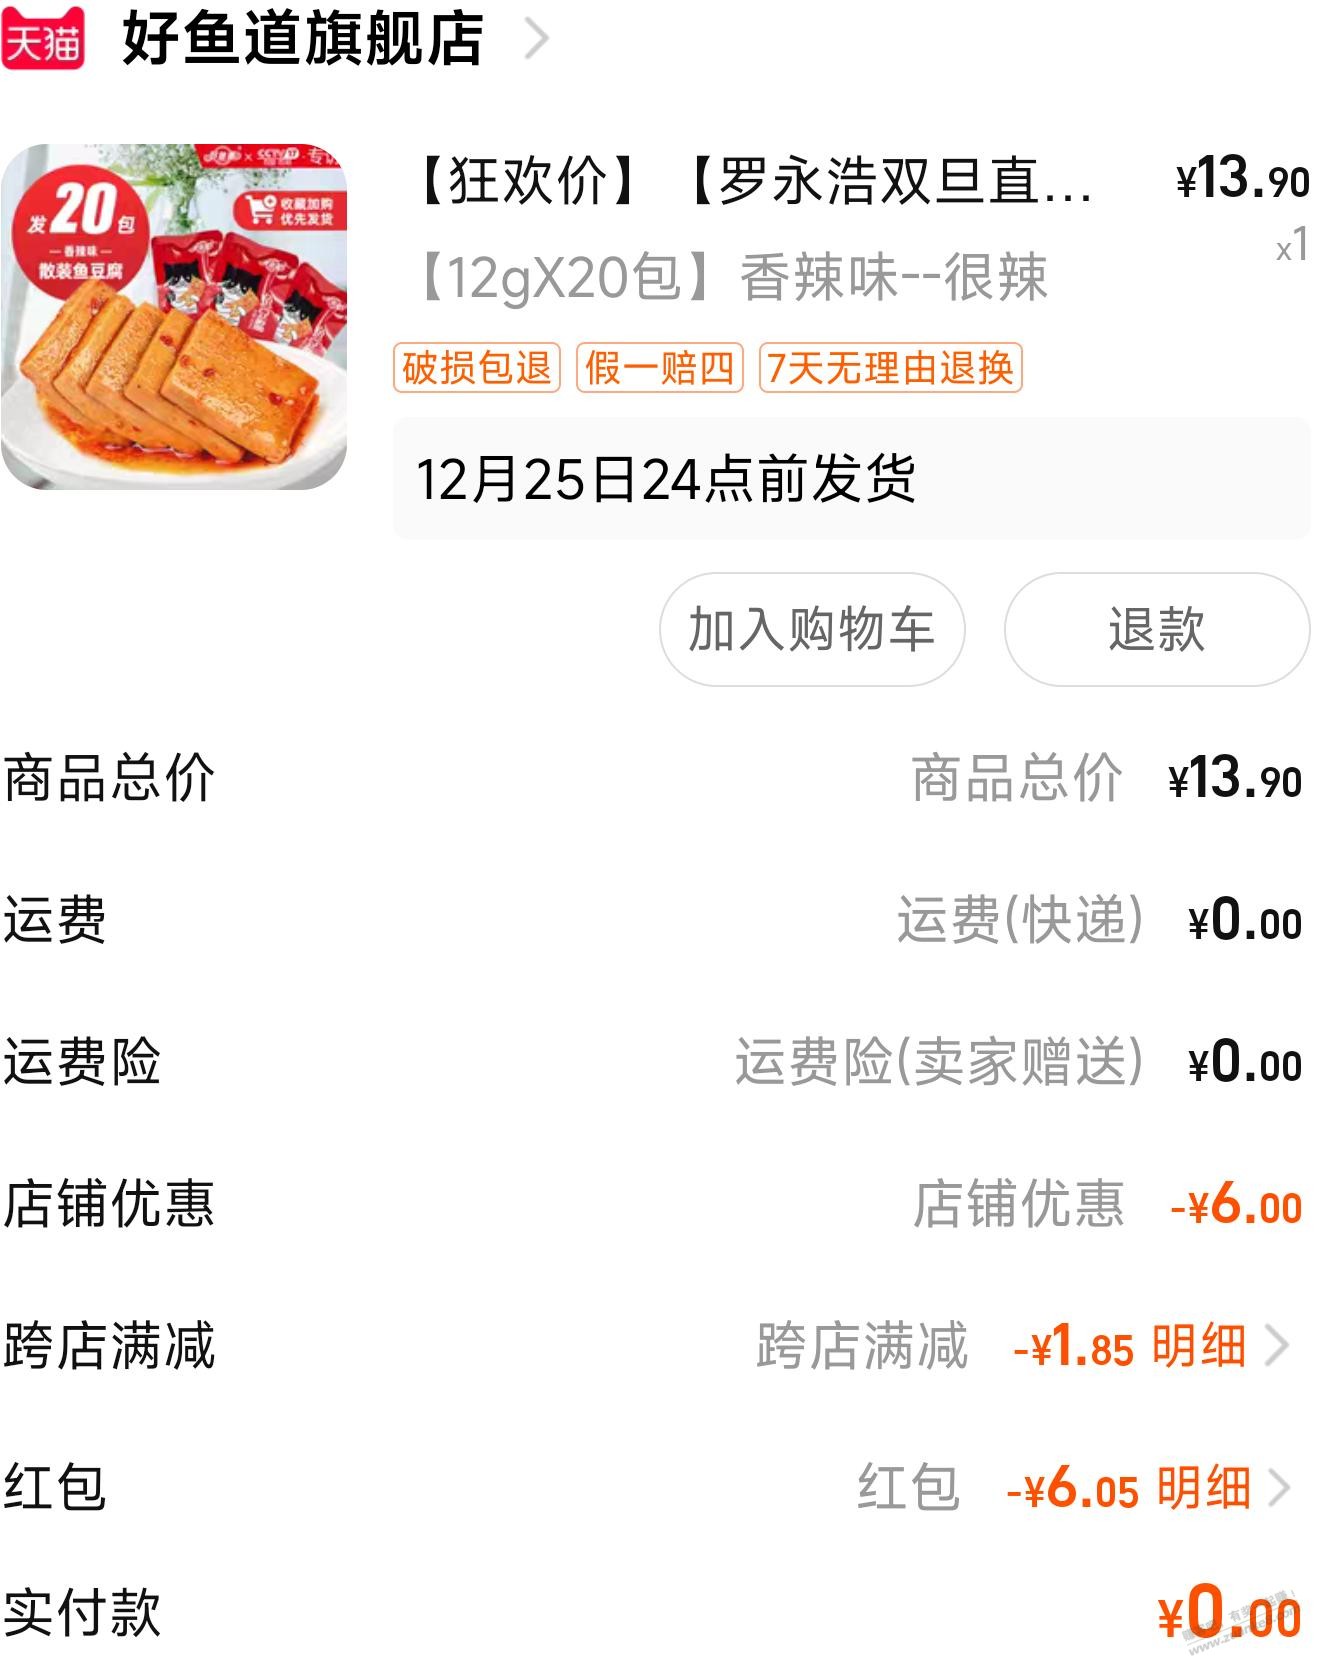 1元20包鱼豆腐-惠小助(52huixz.com)